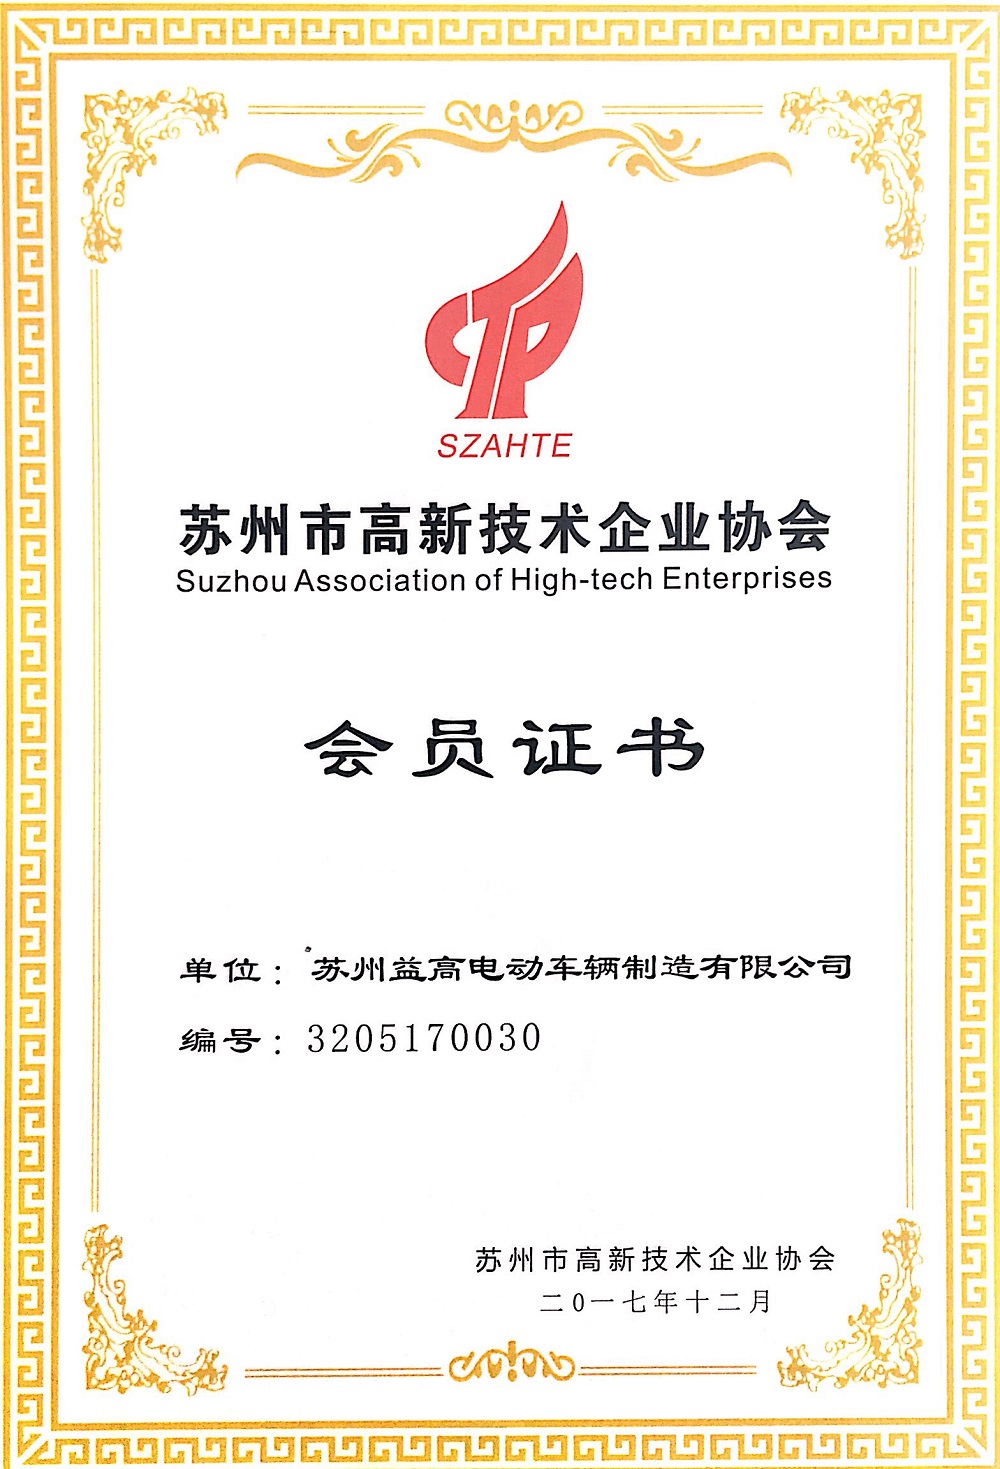 Suzhou Eagle officially joins Suzhou High-tech Enterprise Association